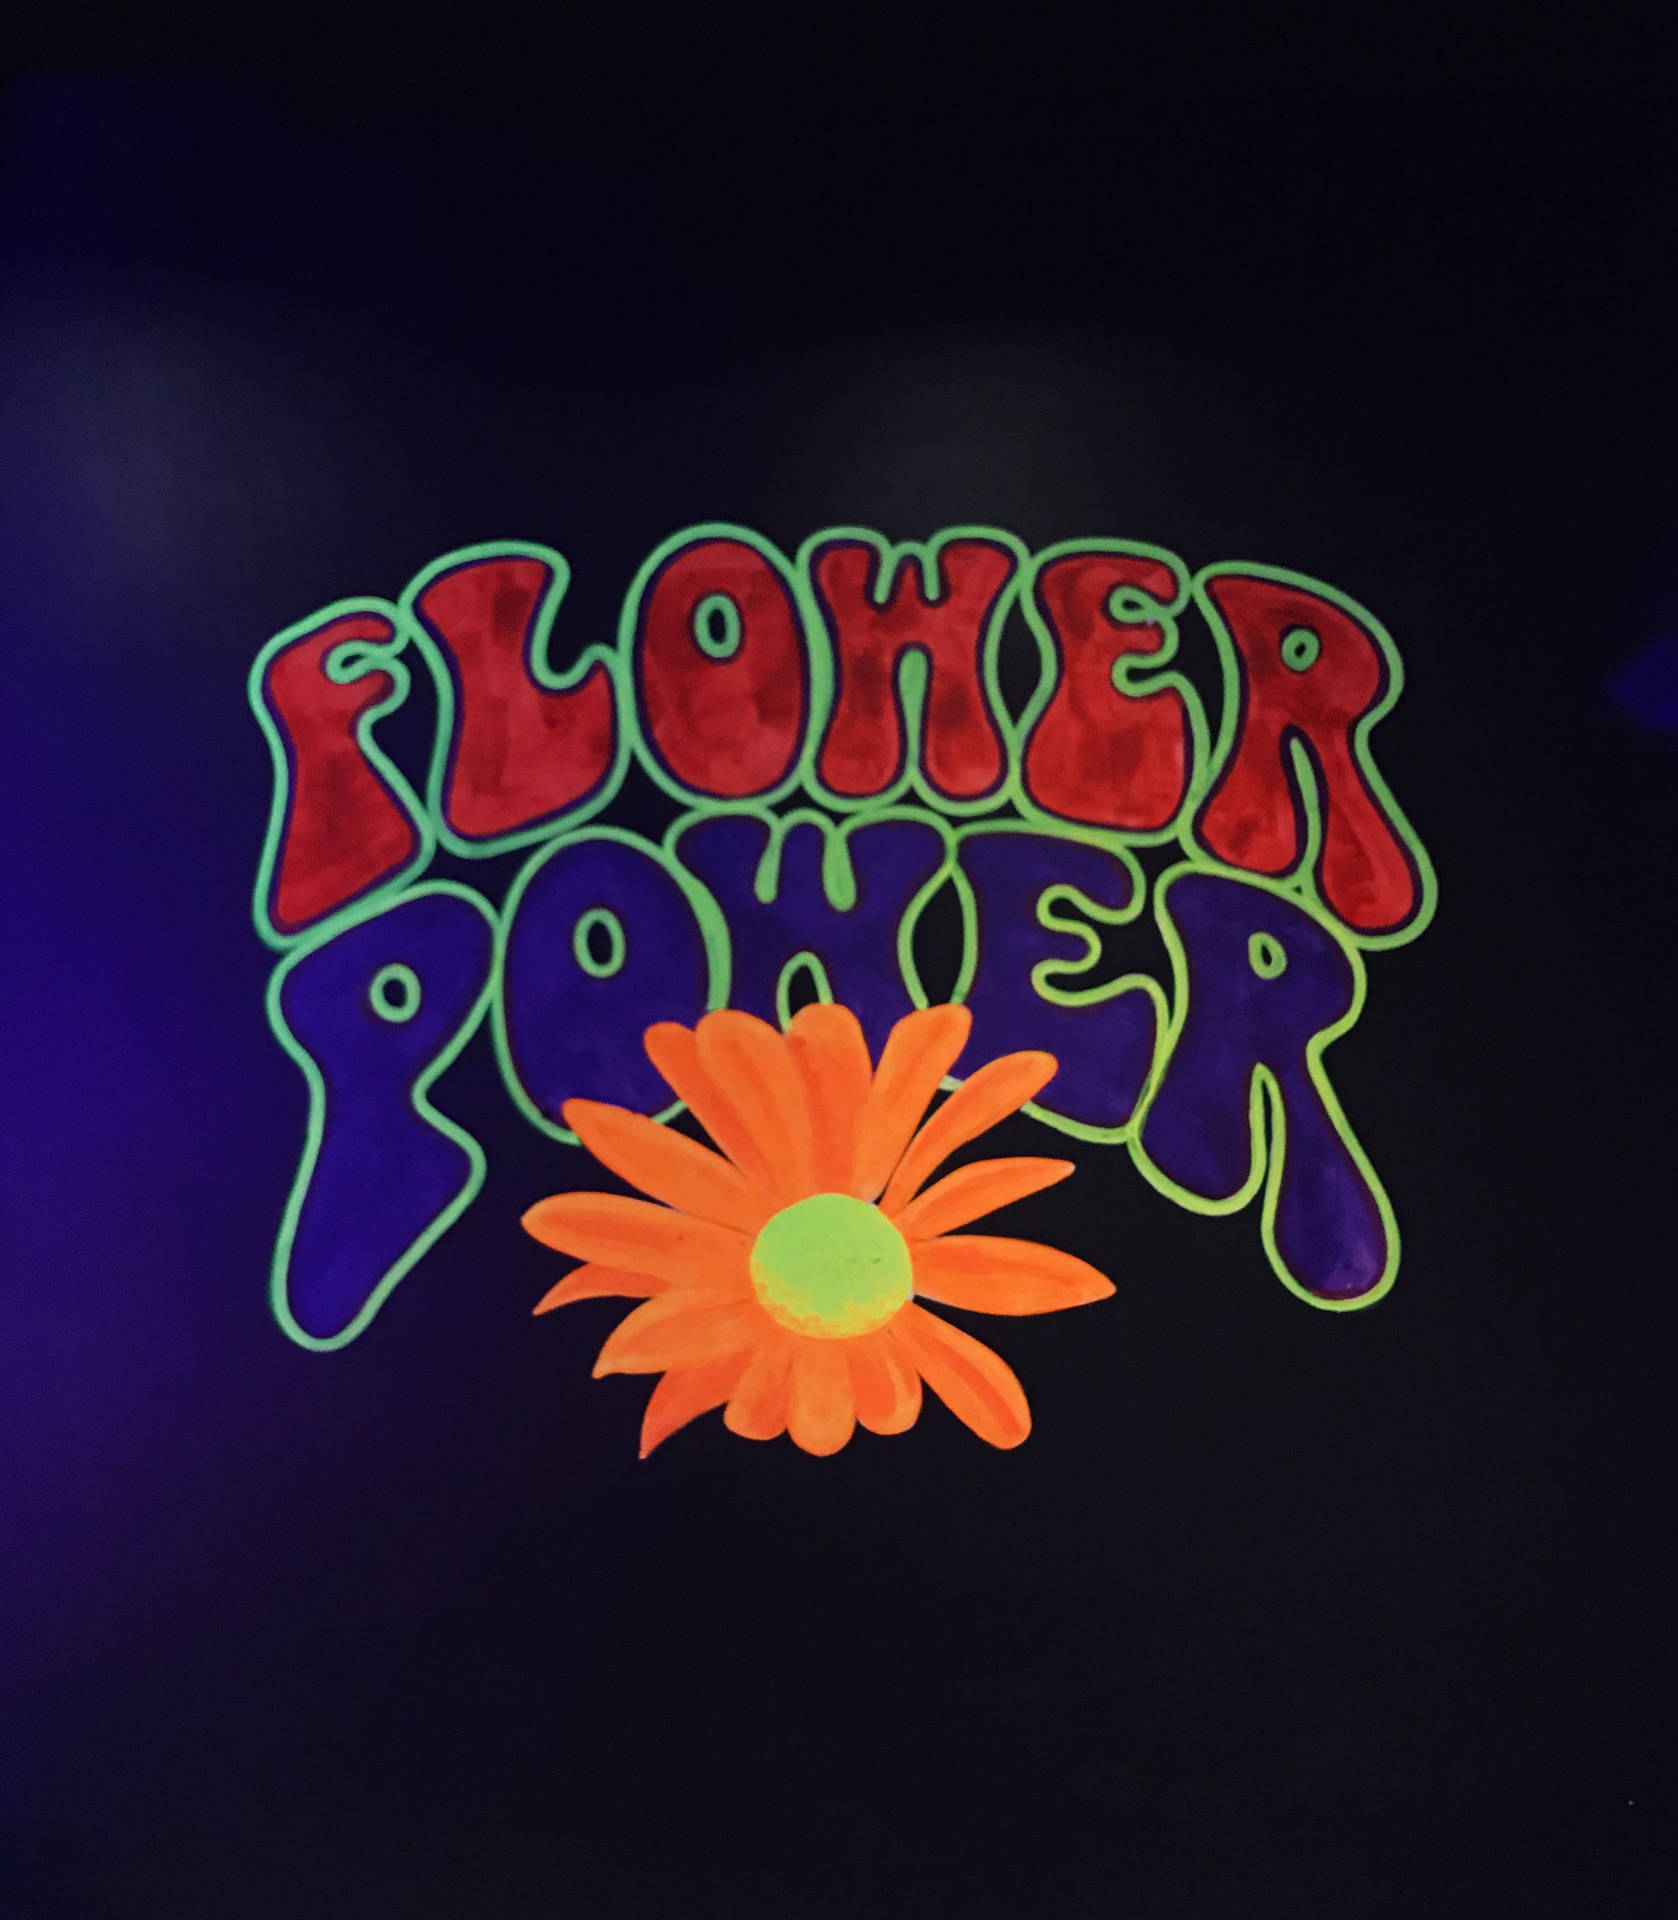 Hippie Flower Power Phrase